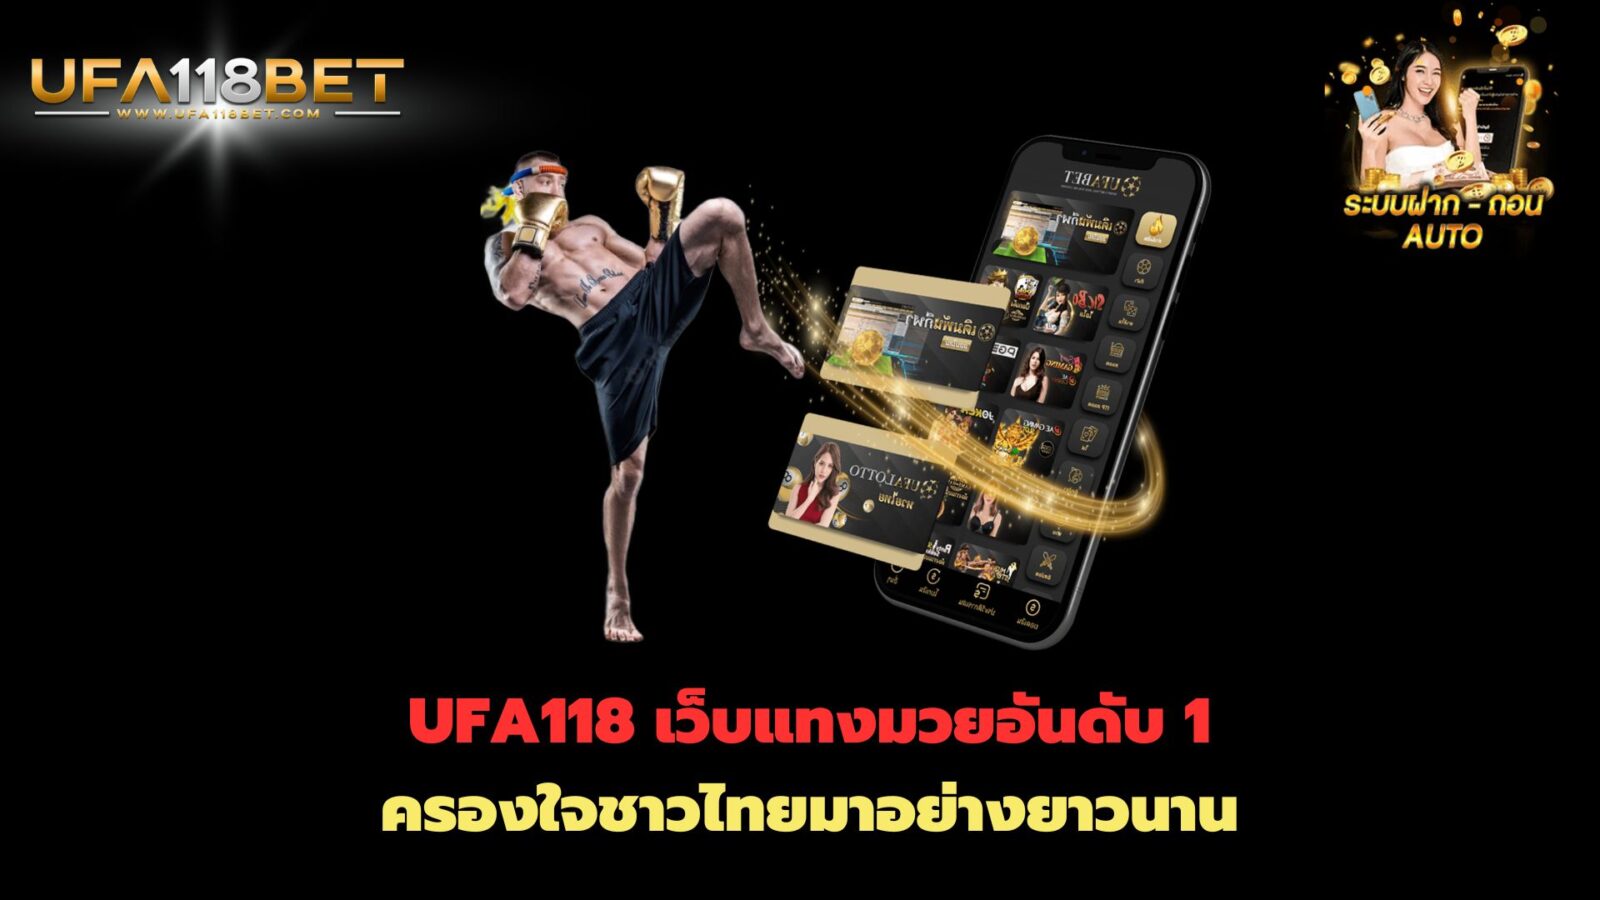 UFA118 เว็บแทงมวยอันดับ 1 ครองใจชาวไทยมาอย่างยาวนาน